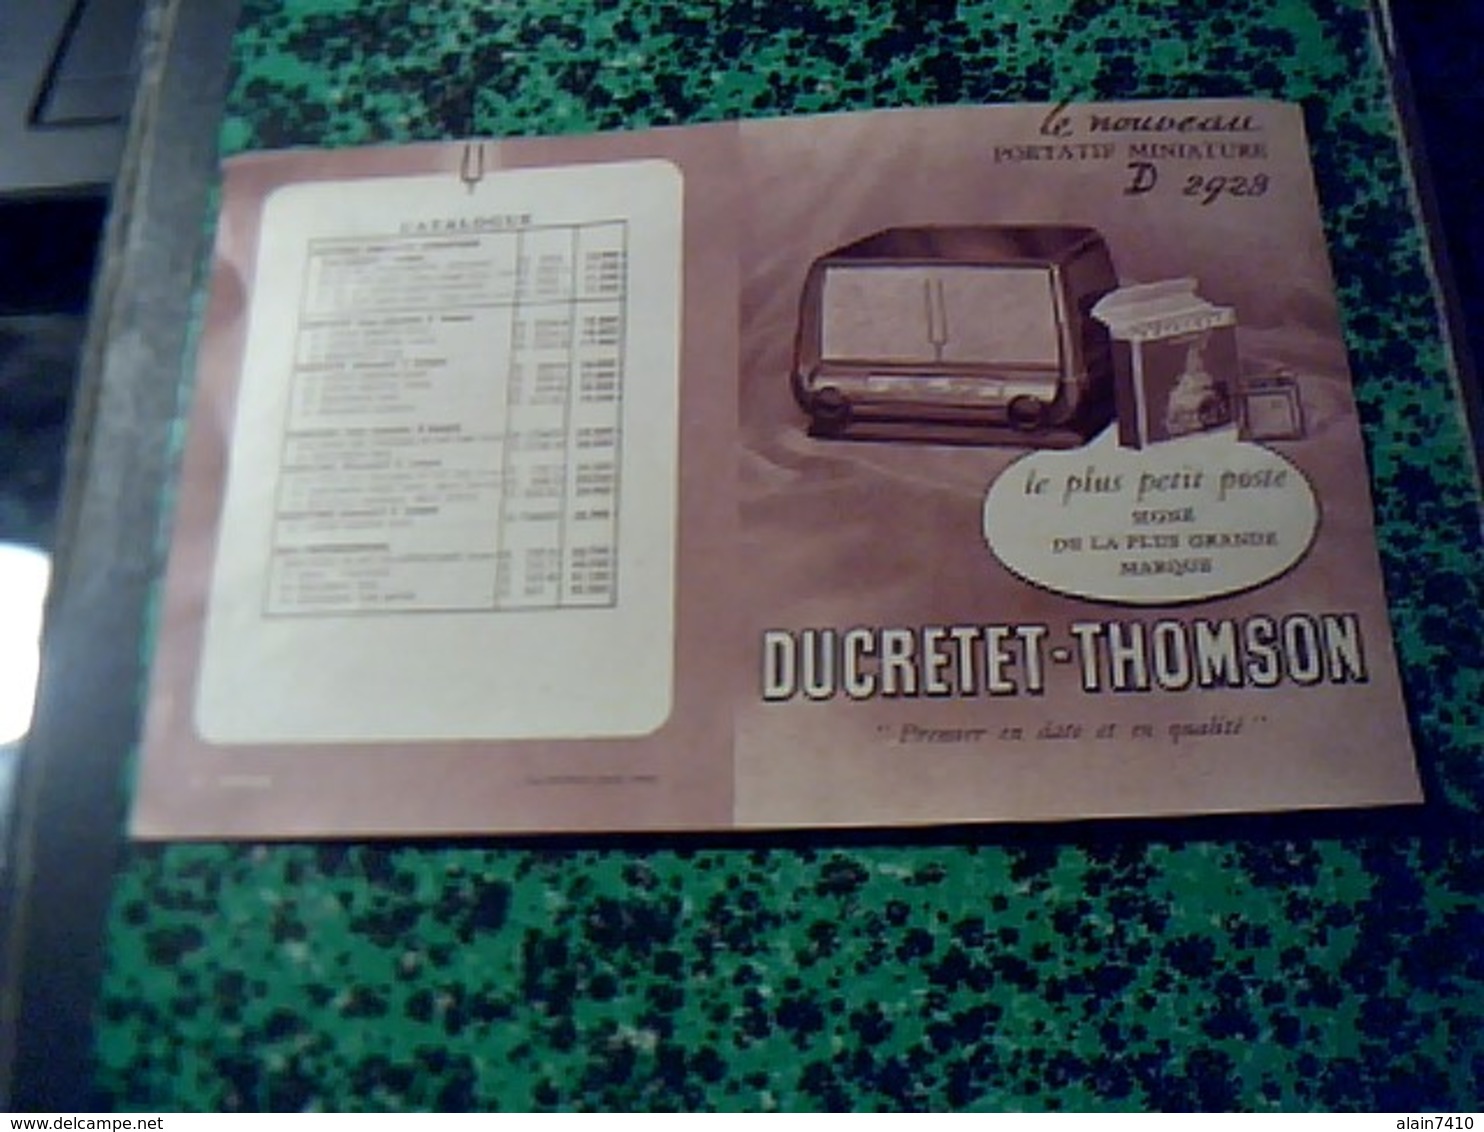 Publicité   Tract TSF Radio POSTE Portatif  Miniature   DUCRETET THOMSON //D 2923 Choix De Coloris  Annee  1950 - Publicités